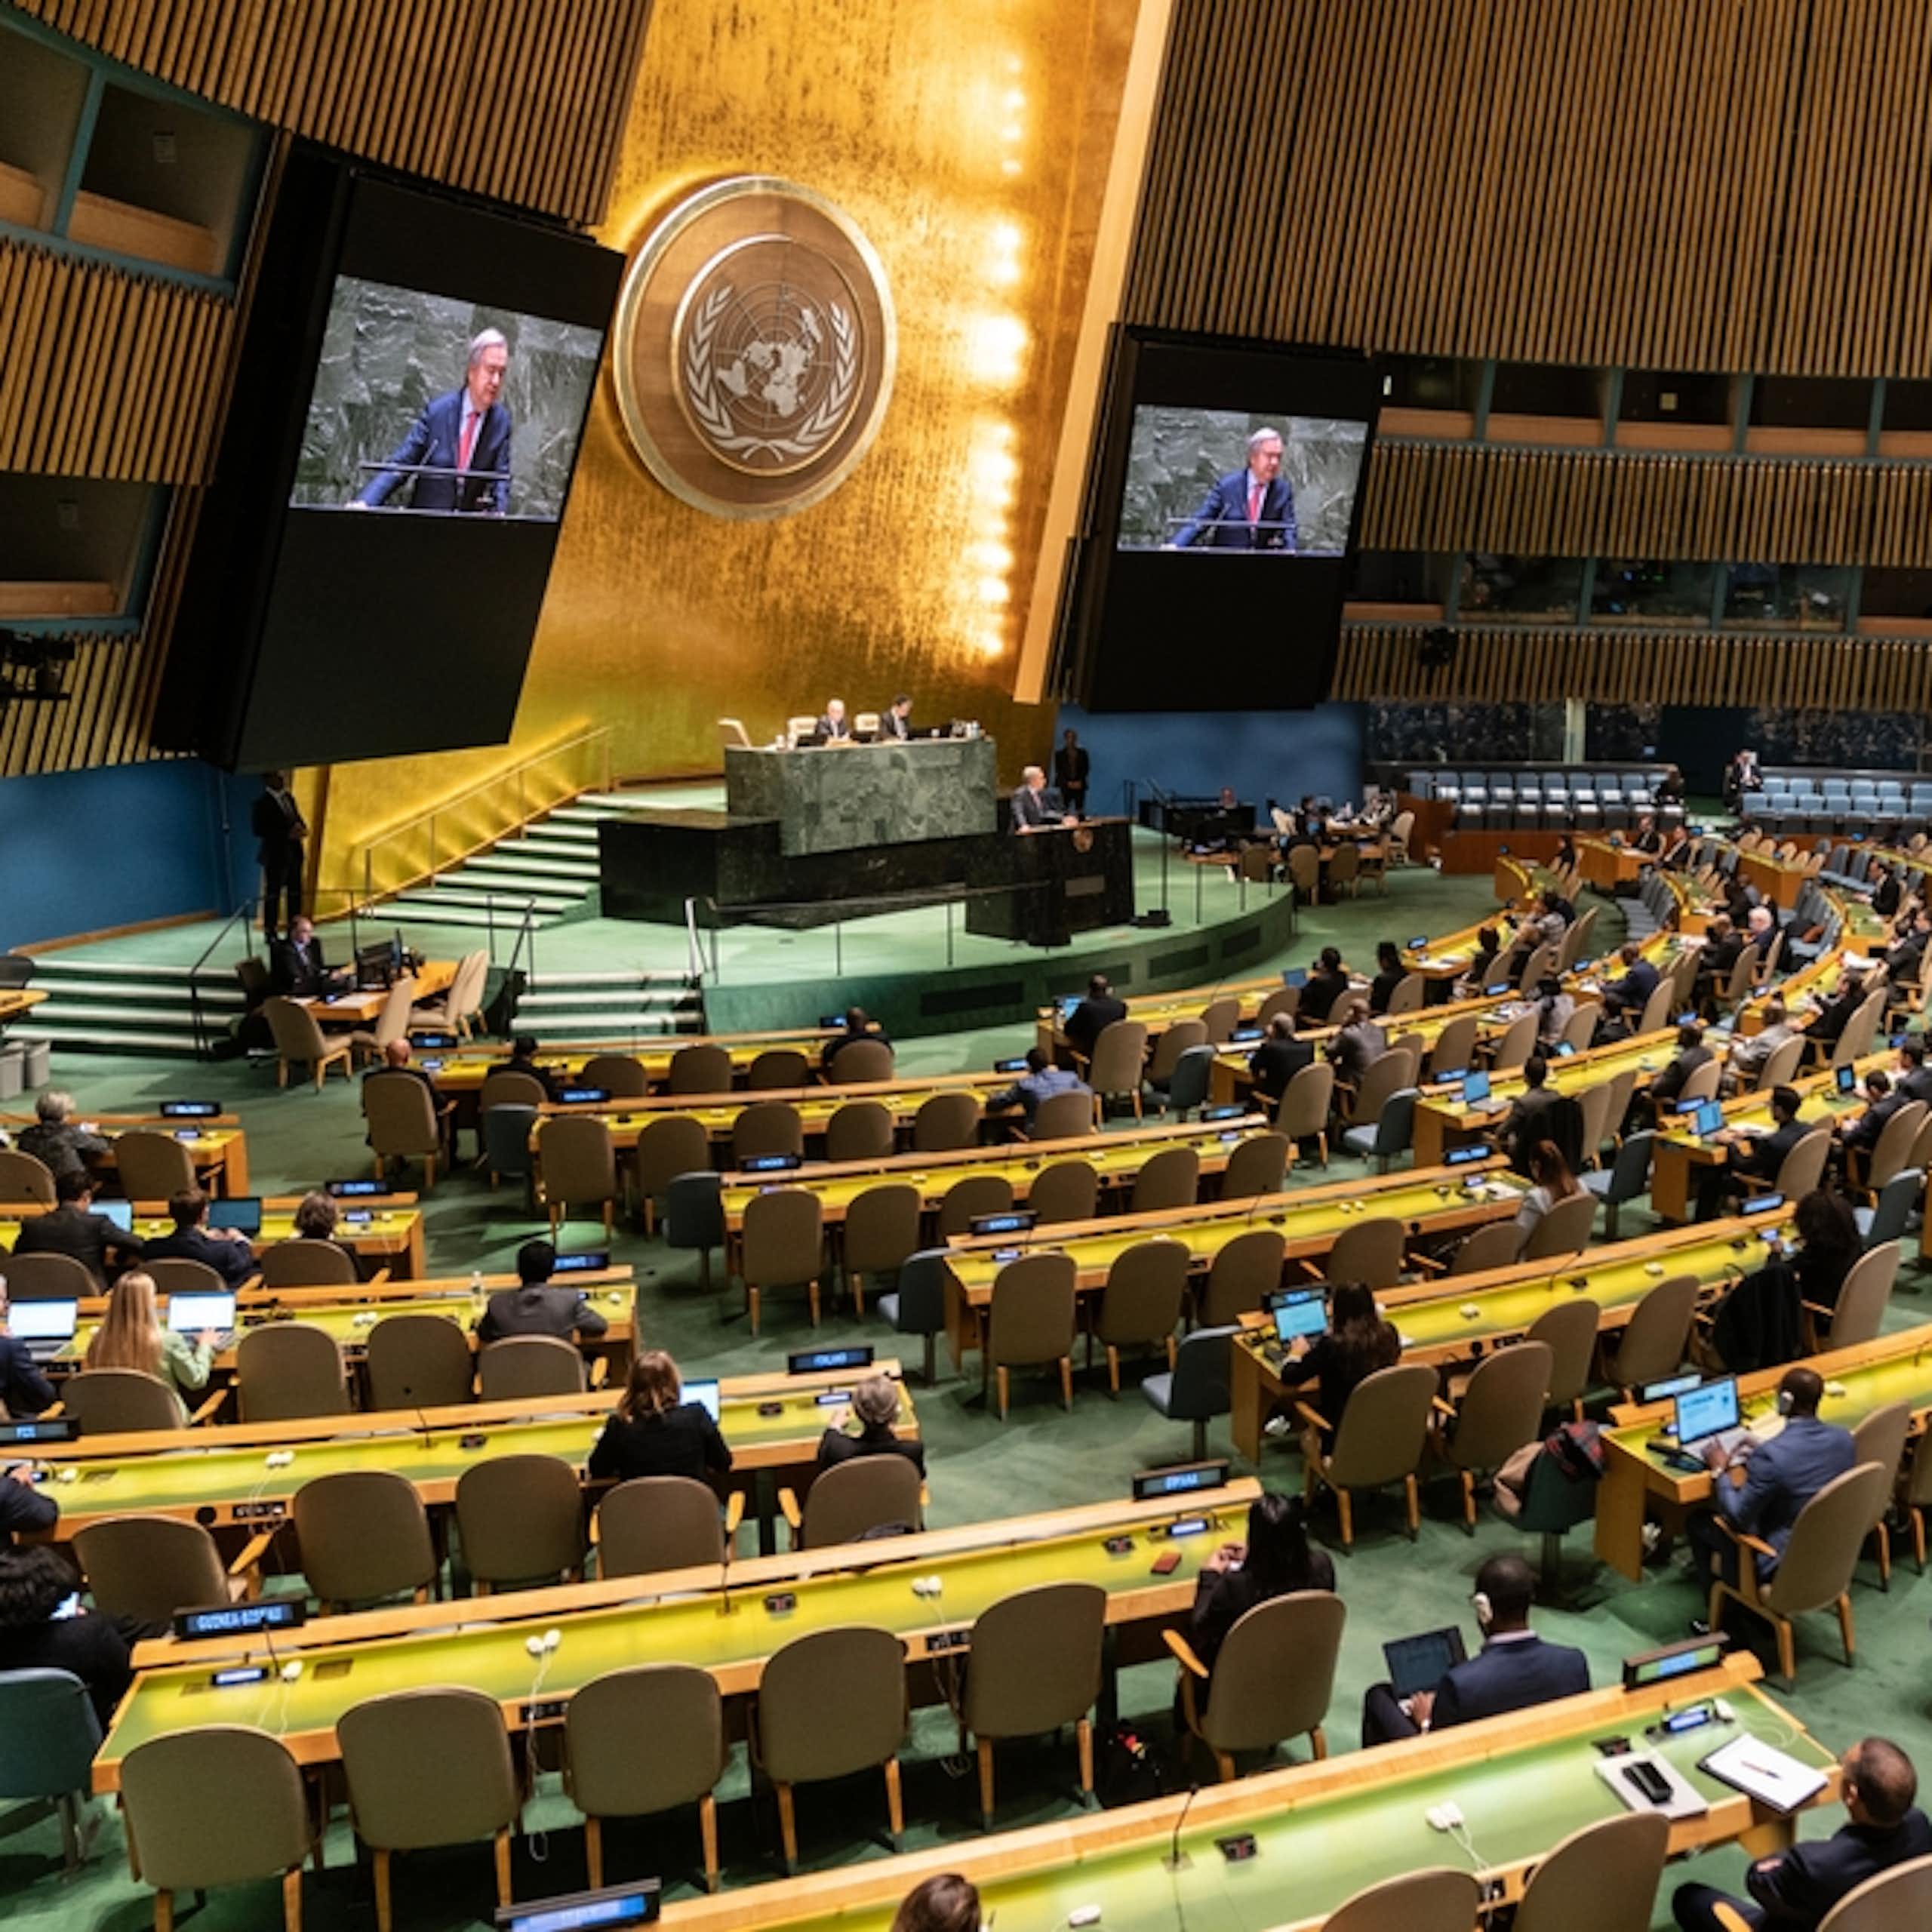 Le Secrétaire général Antonio Guterres s'exprime sur ses priorités pour 2023 lors de la 58e séance plénière de l'Assemblée générale au Siège de l'ONU à New York le 6 février 2023